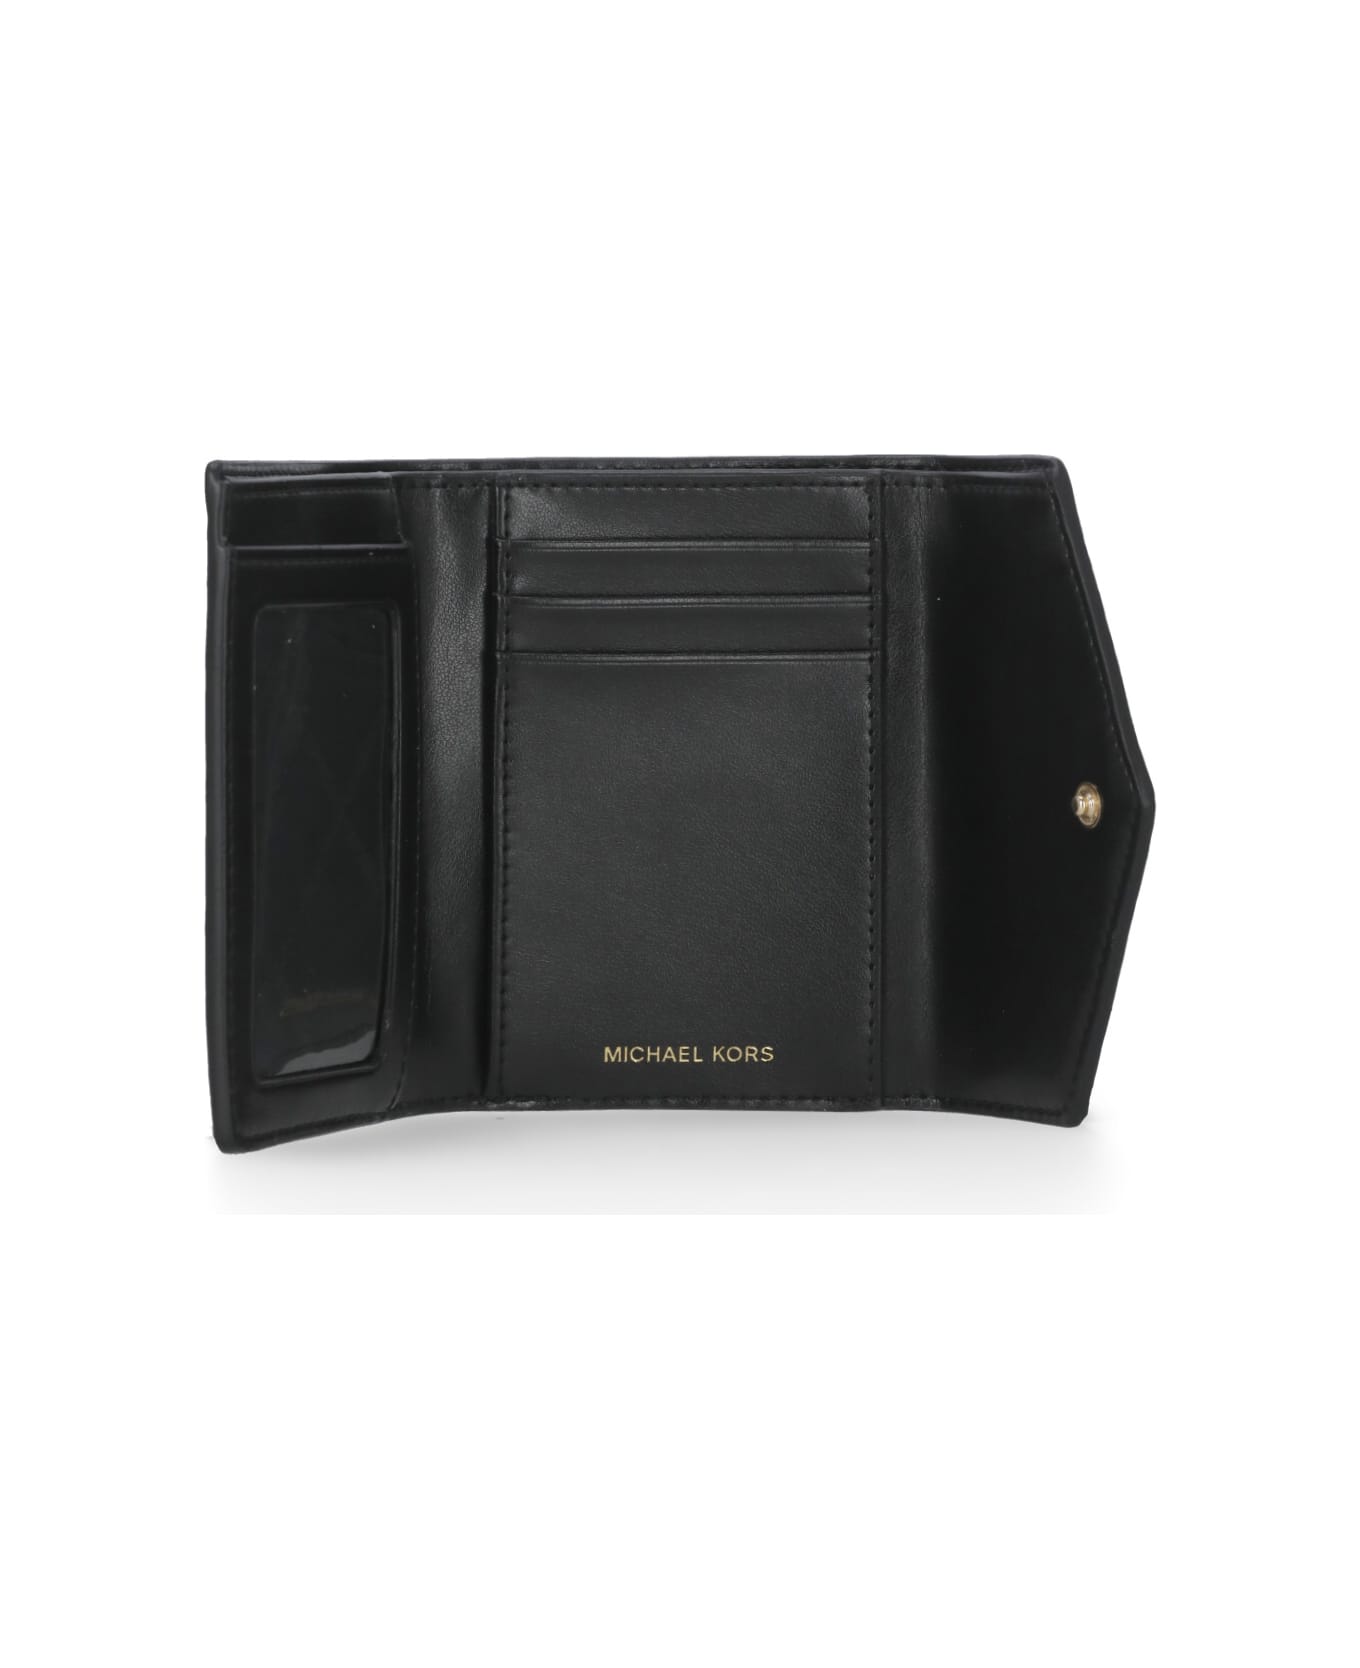 MICHAEL Michael Kors Greenwich Trifold Wallet - Black 財布